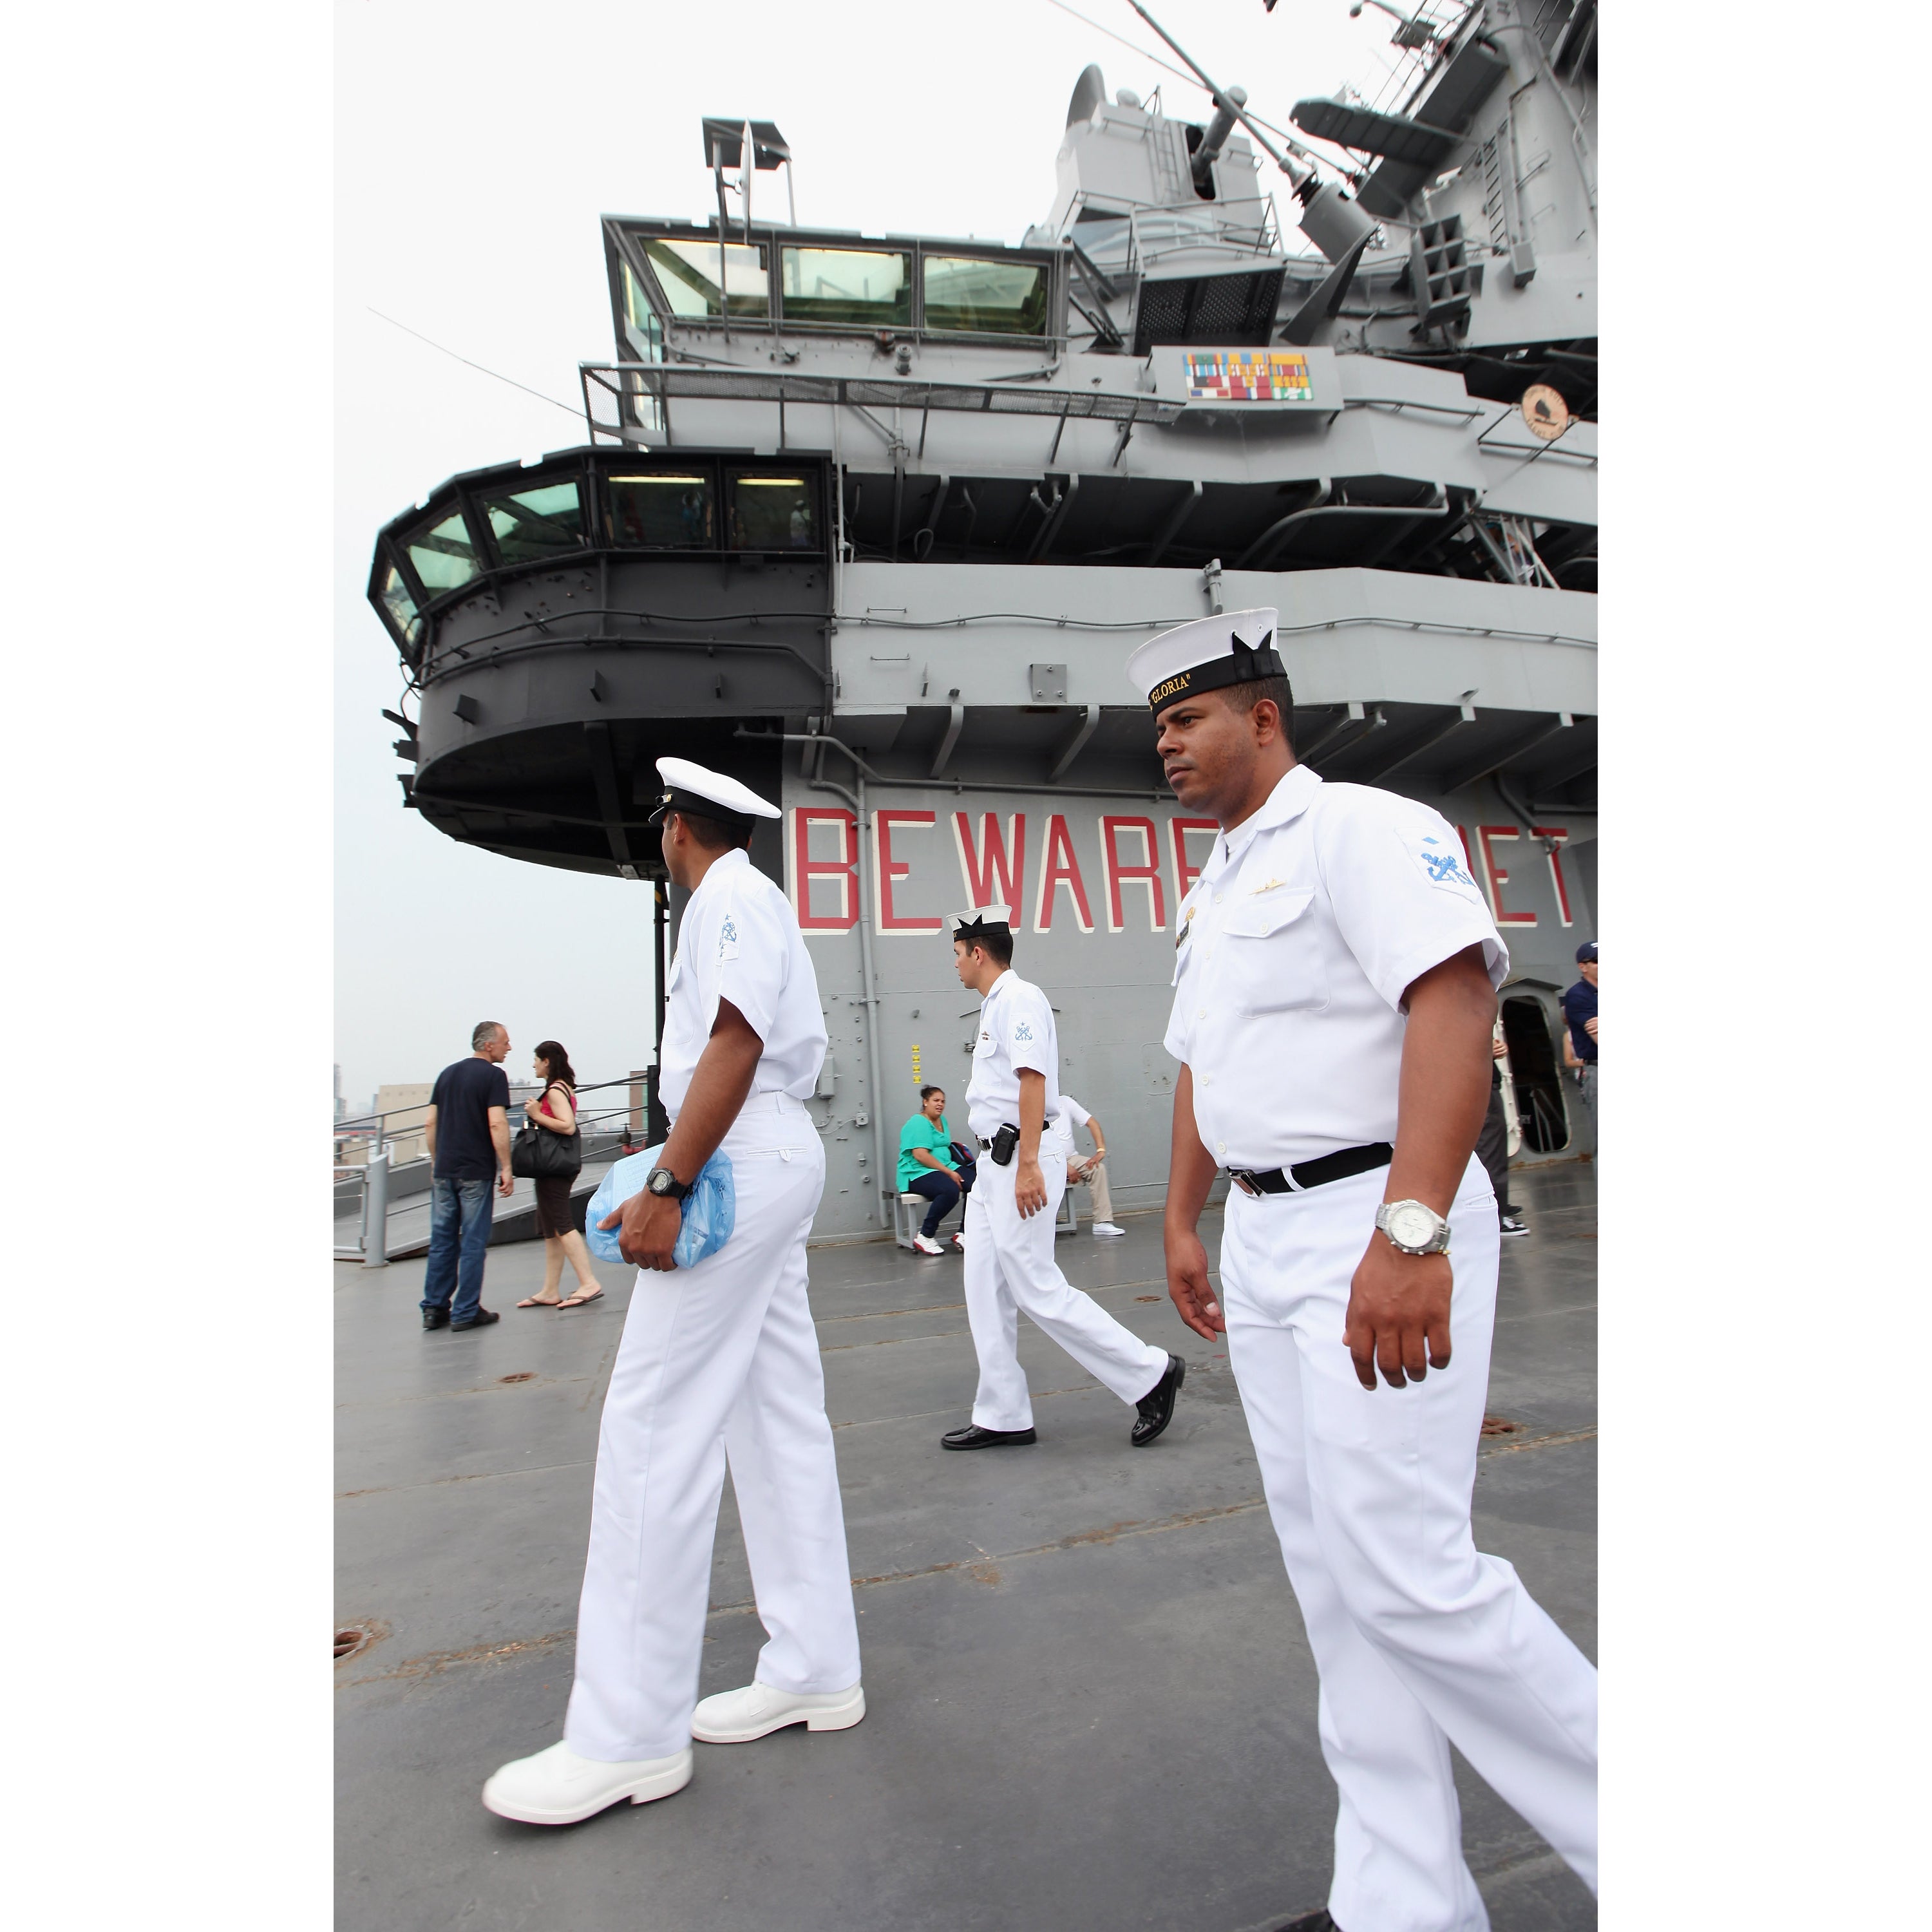 Vintage Black Sailor Photos In Honor Of Fleet Week